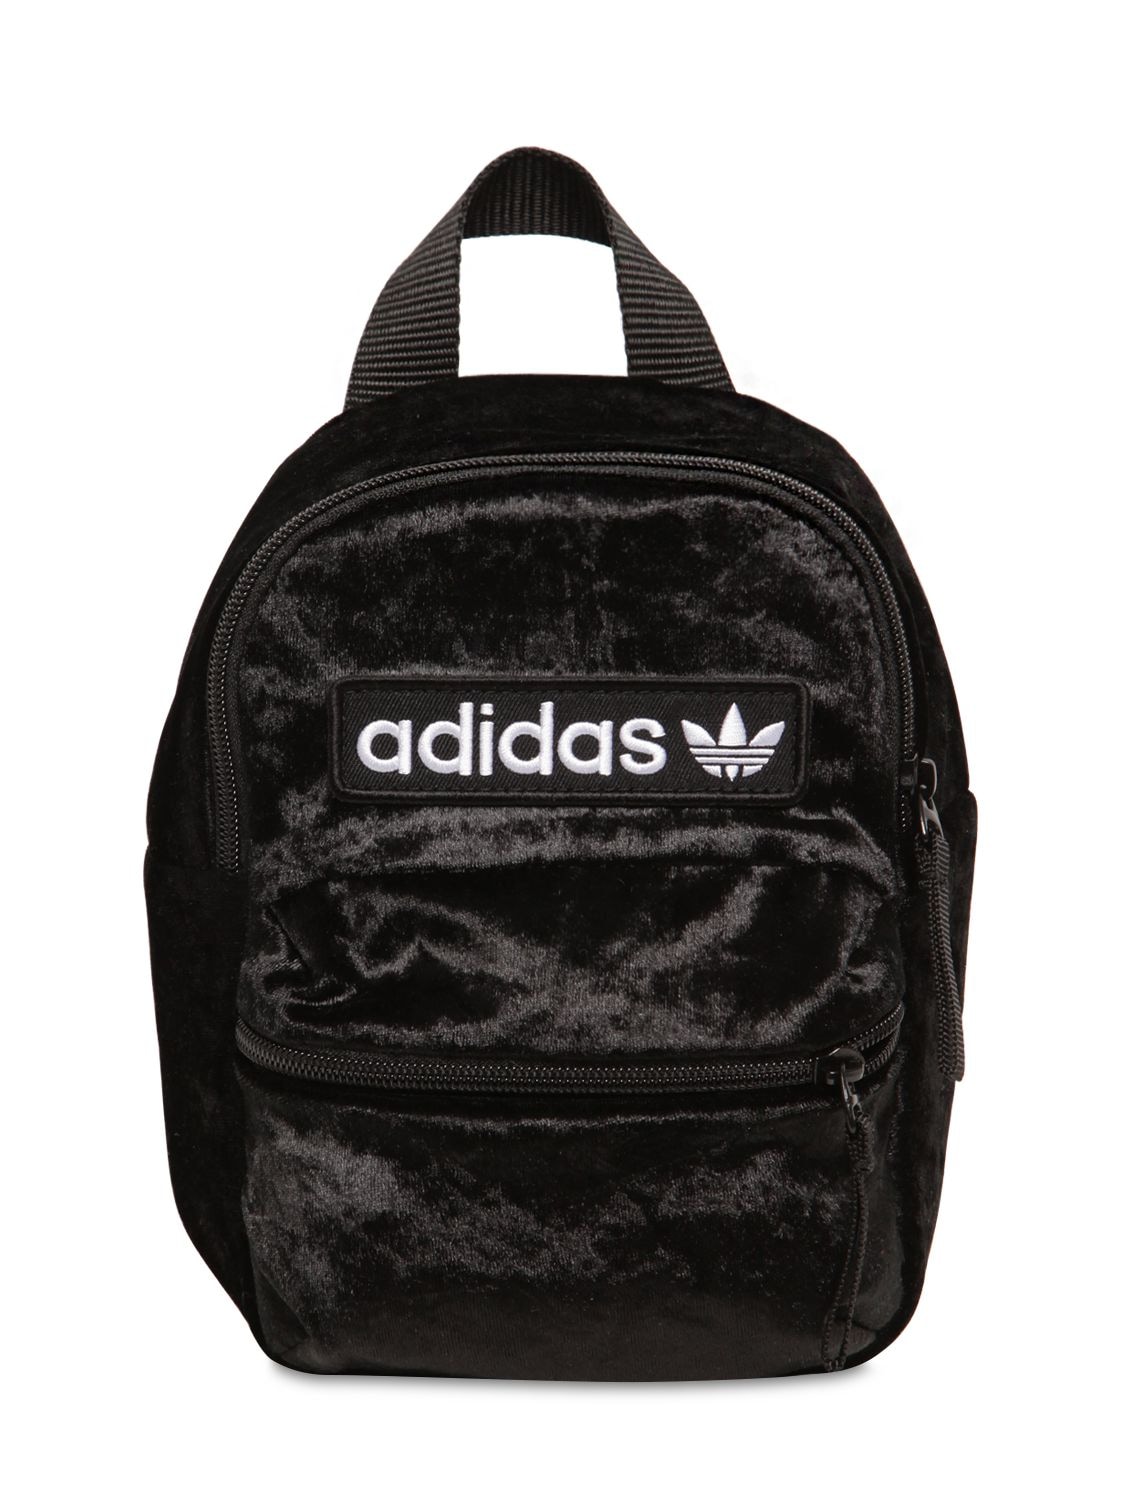 velvet adidas backpack